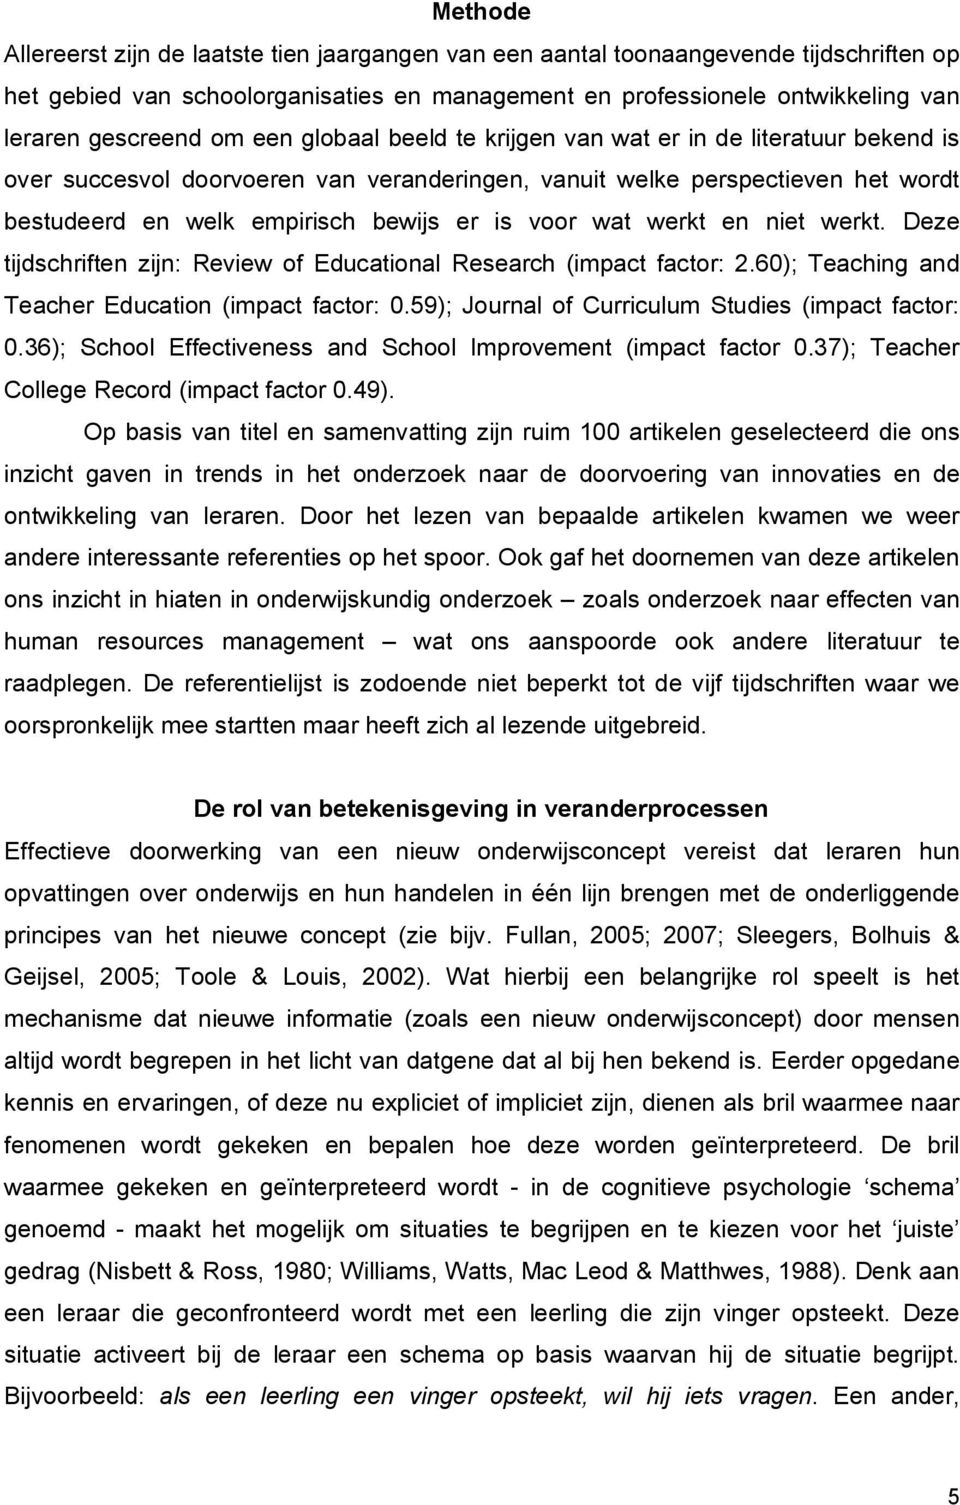 wat werkt en niet werkt. Deze tijdschriften zijn: Review of Educational Research (impact factor: 2.60); Teaching and Teacher Education (impact factor: 0.